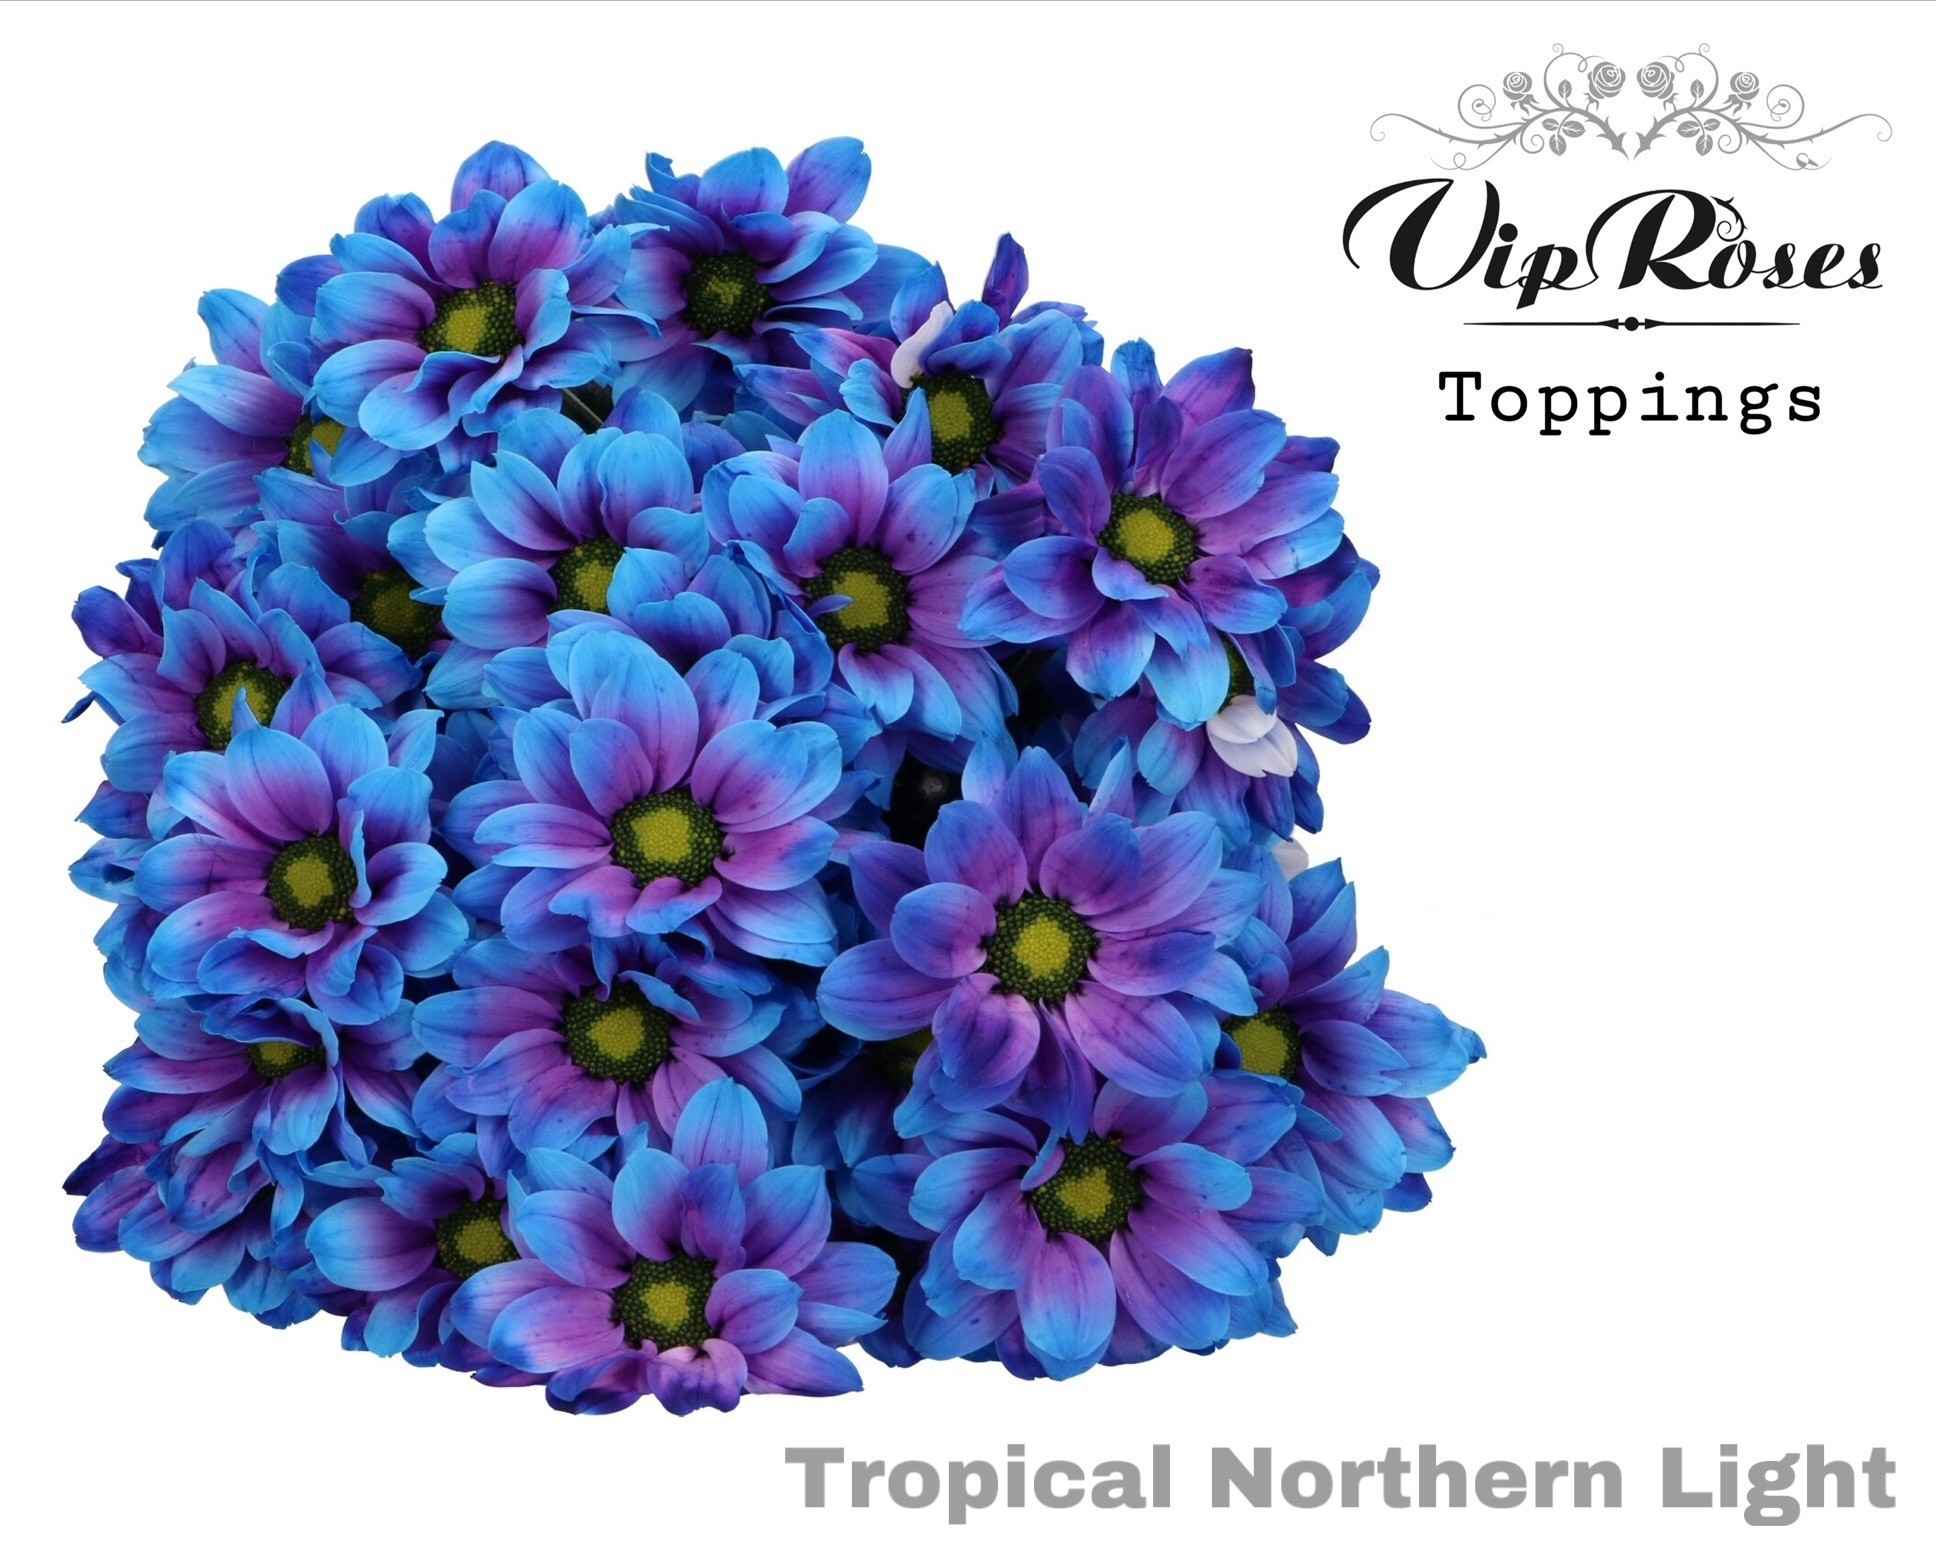 Срезанные цветы оптом Chrys sp paint tropica norhern light от 20шт из Голландии с доставкой по России